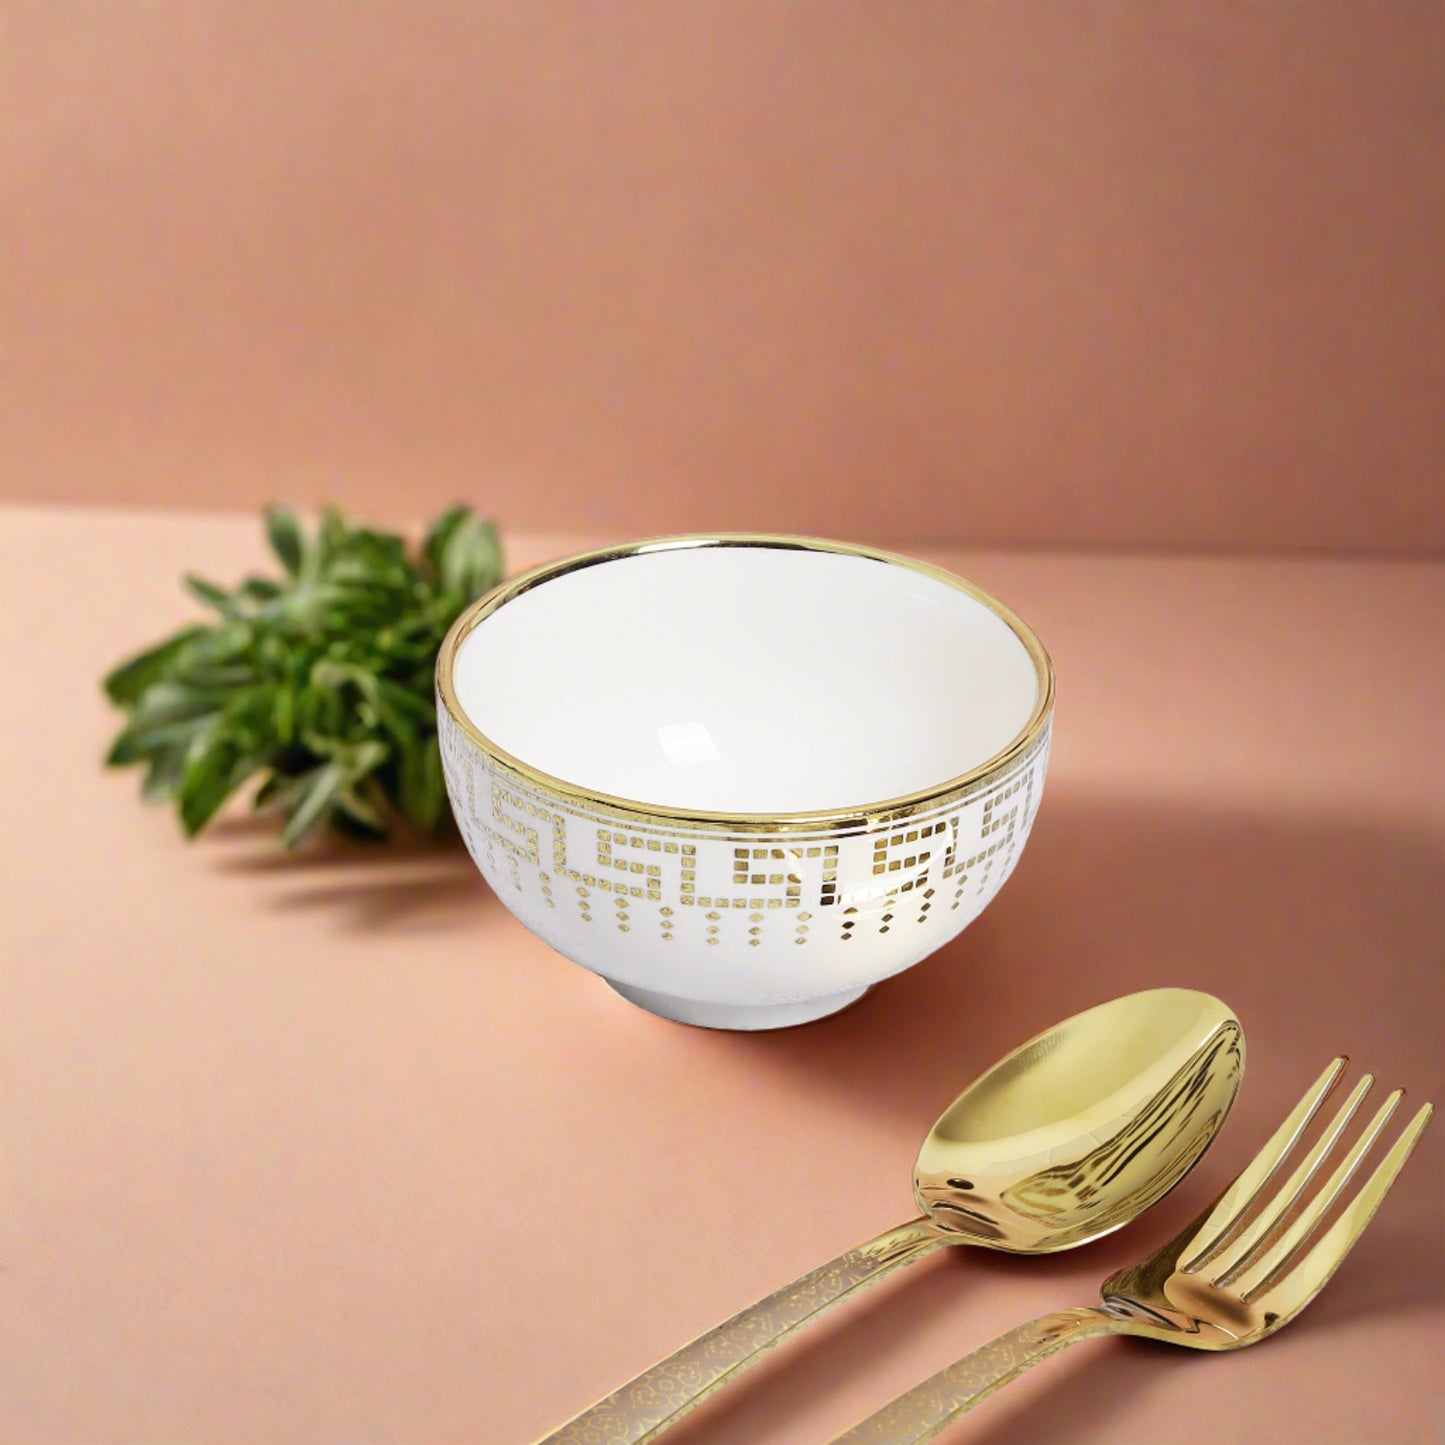 ersatile ceramic bowl - ideal for soups, salads, or snacks.